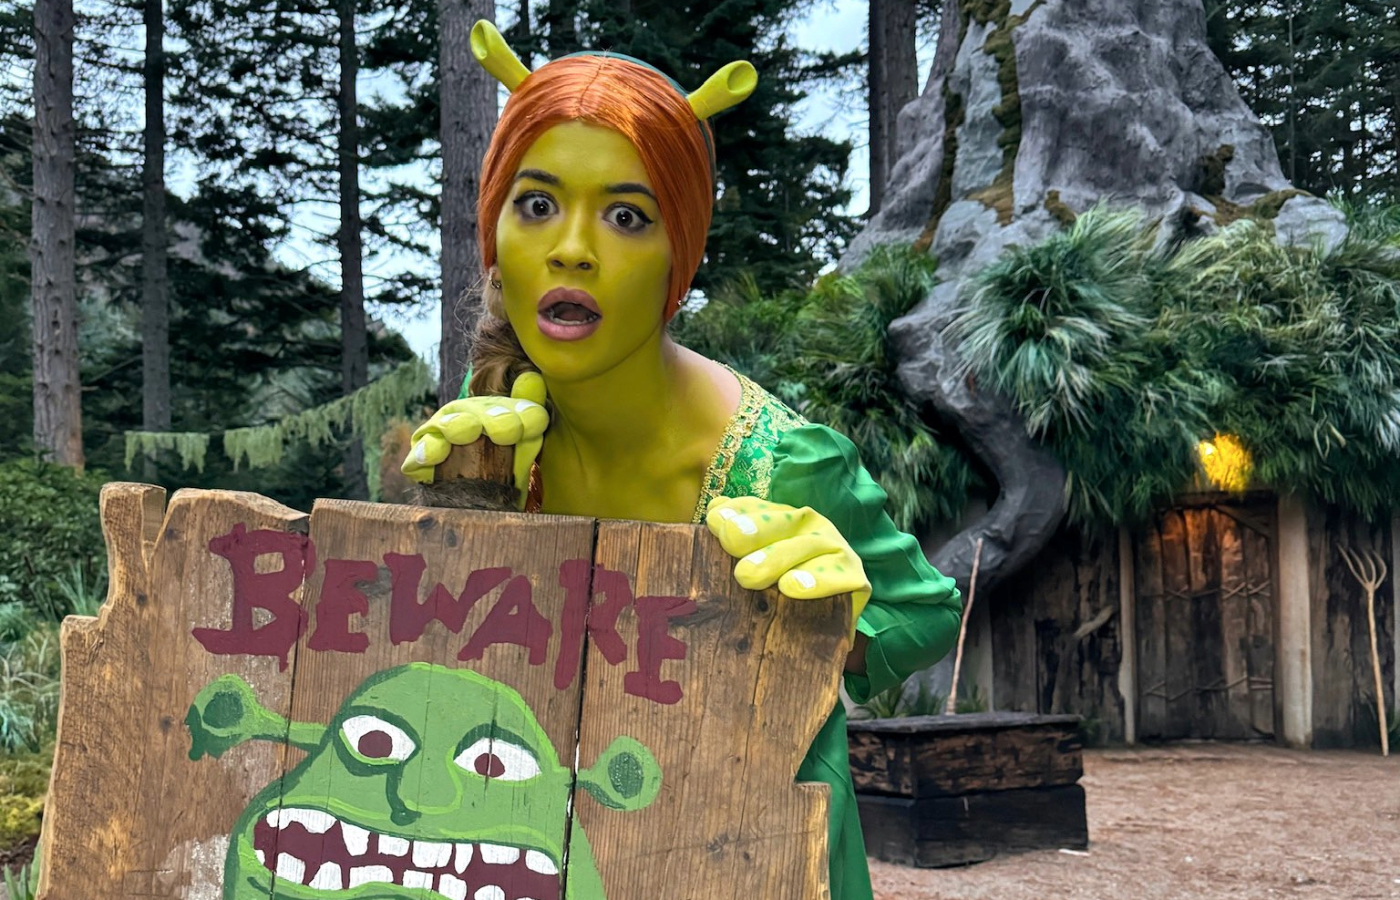 Rita Ora at Shrek's Swamp.